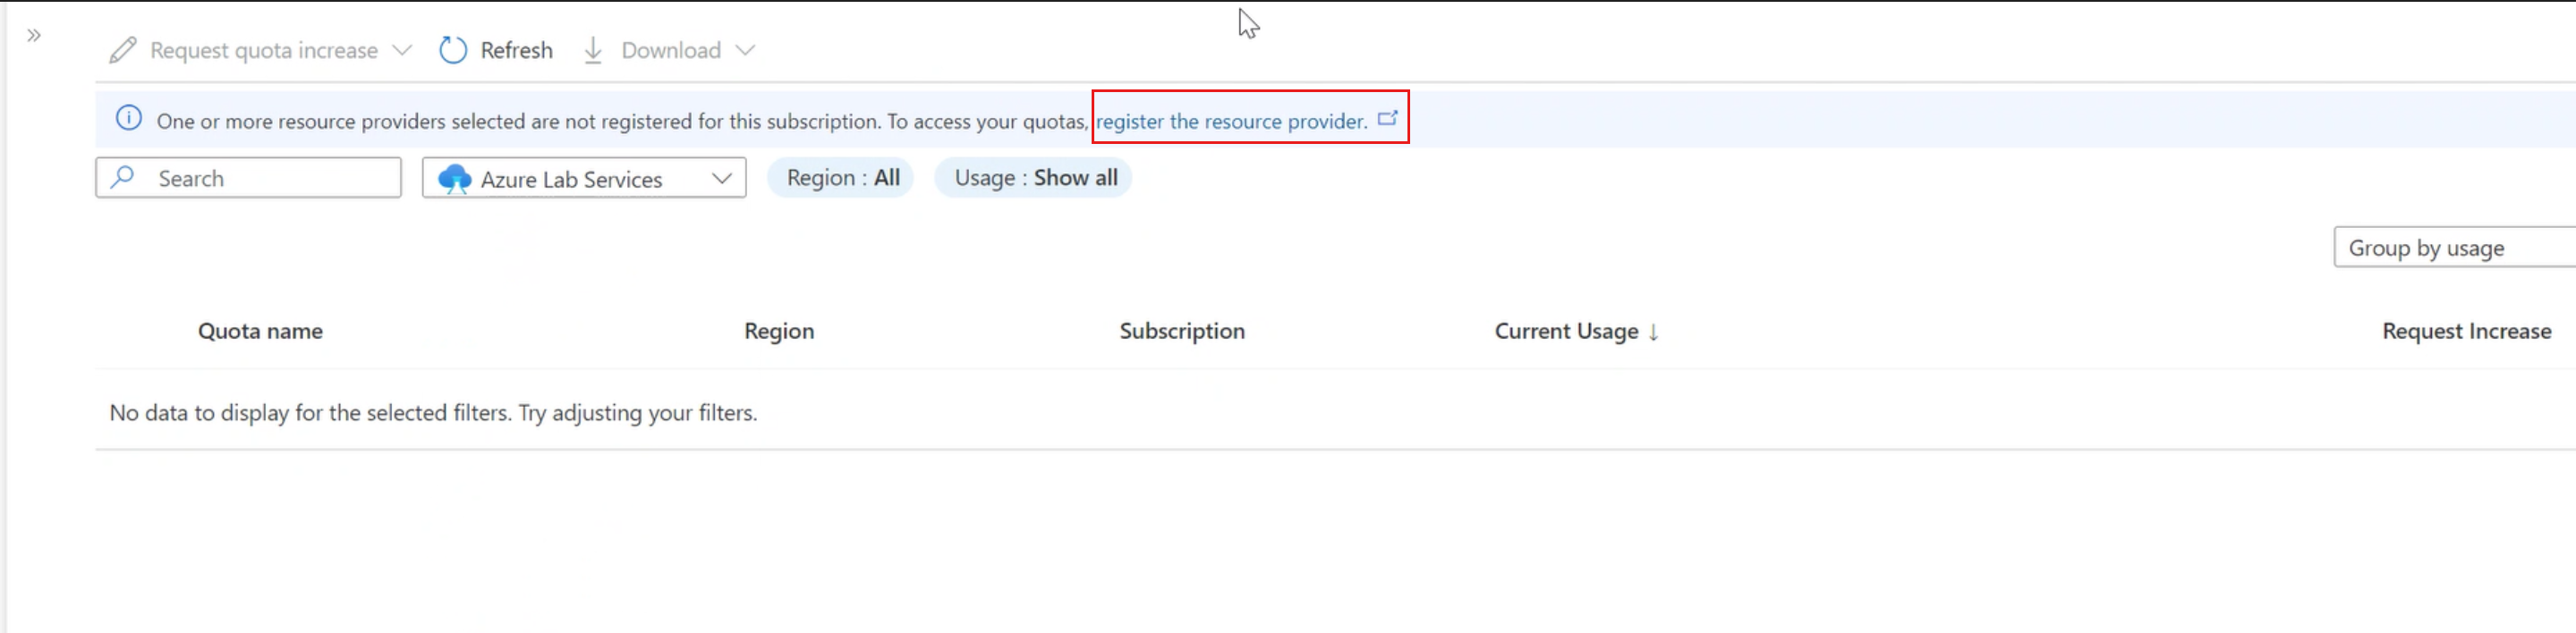 Screenshot che mostra la registrazione con il messaggio di servizio e il collegamento per registrare il provider di risorse in evidenzia.